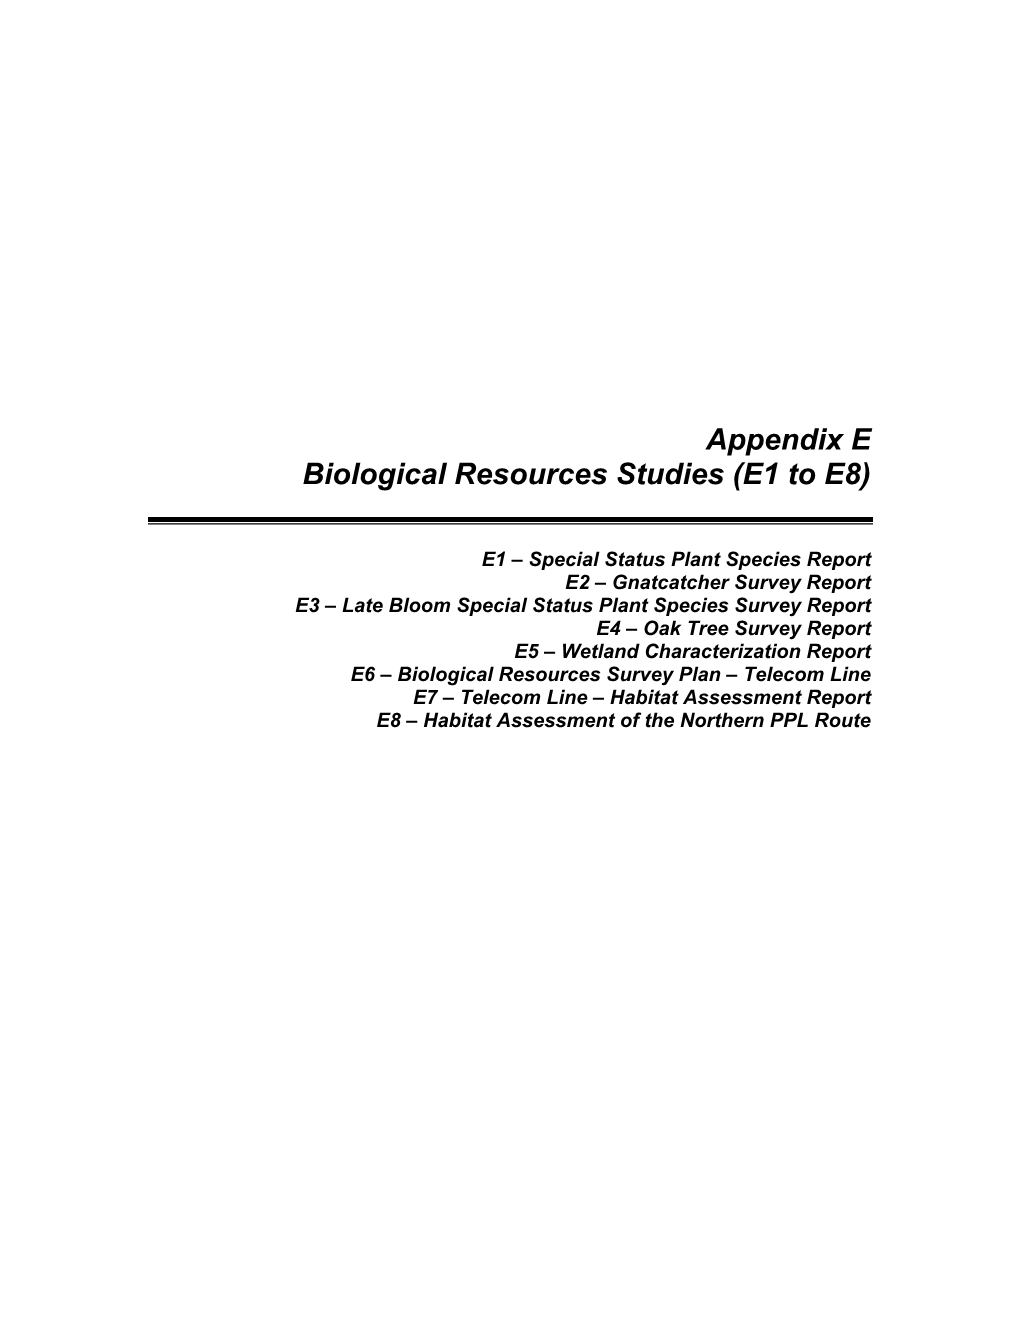 Biological Resources Studies (E1 to E8)